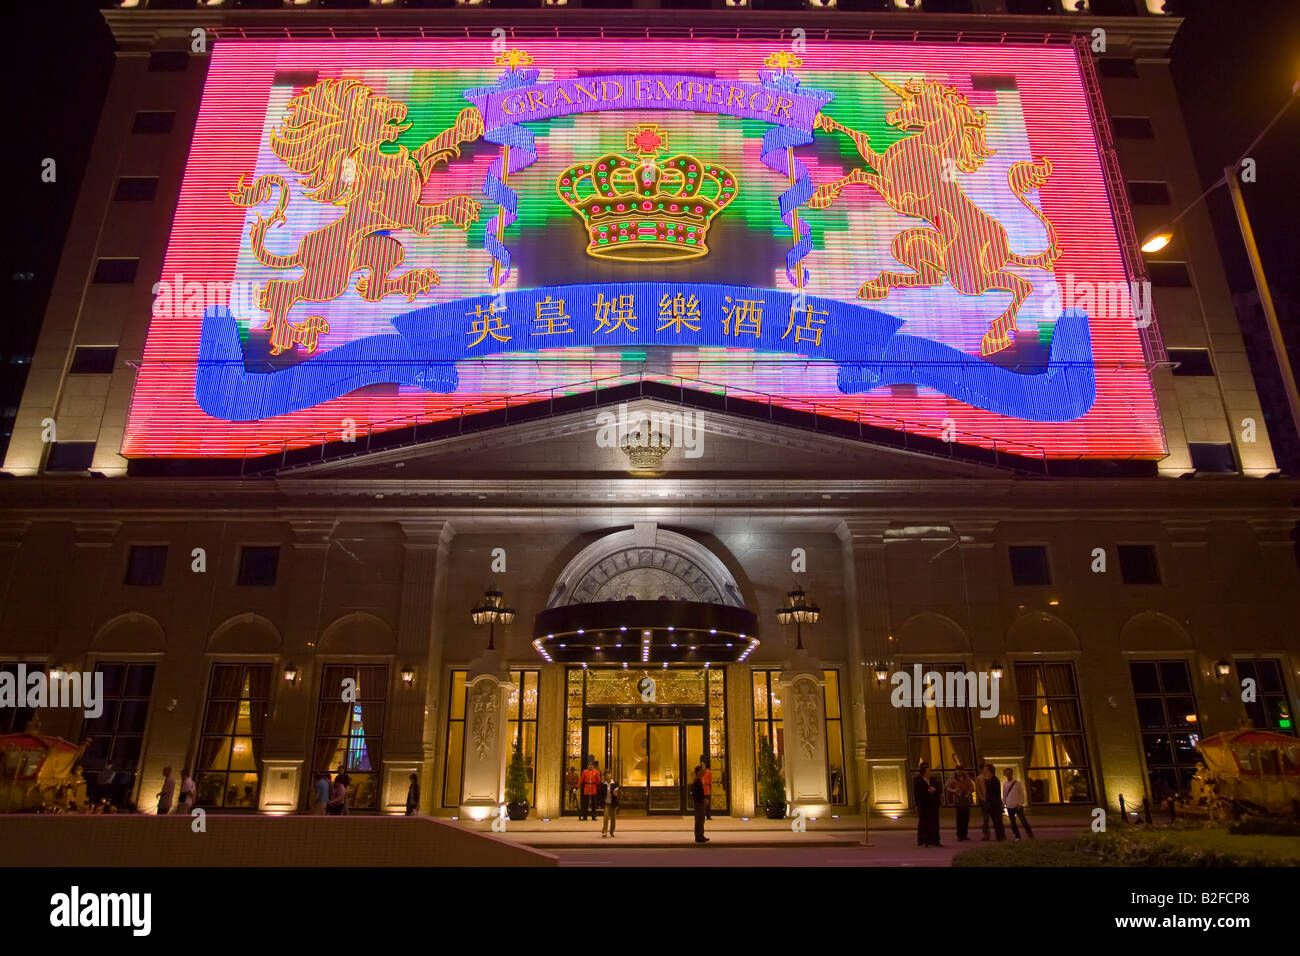 Chine - Macao Casino néons et signes de nuit. Macao est la seule région de Chine où le jeu est autorisé. Banque D'Images